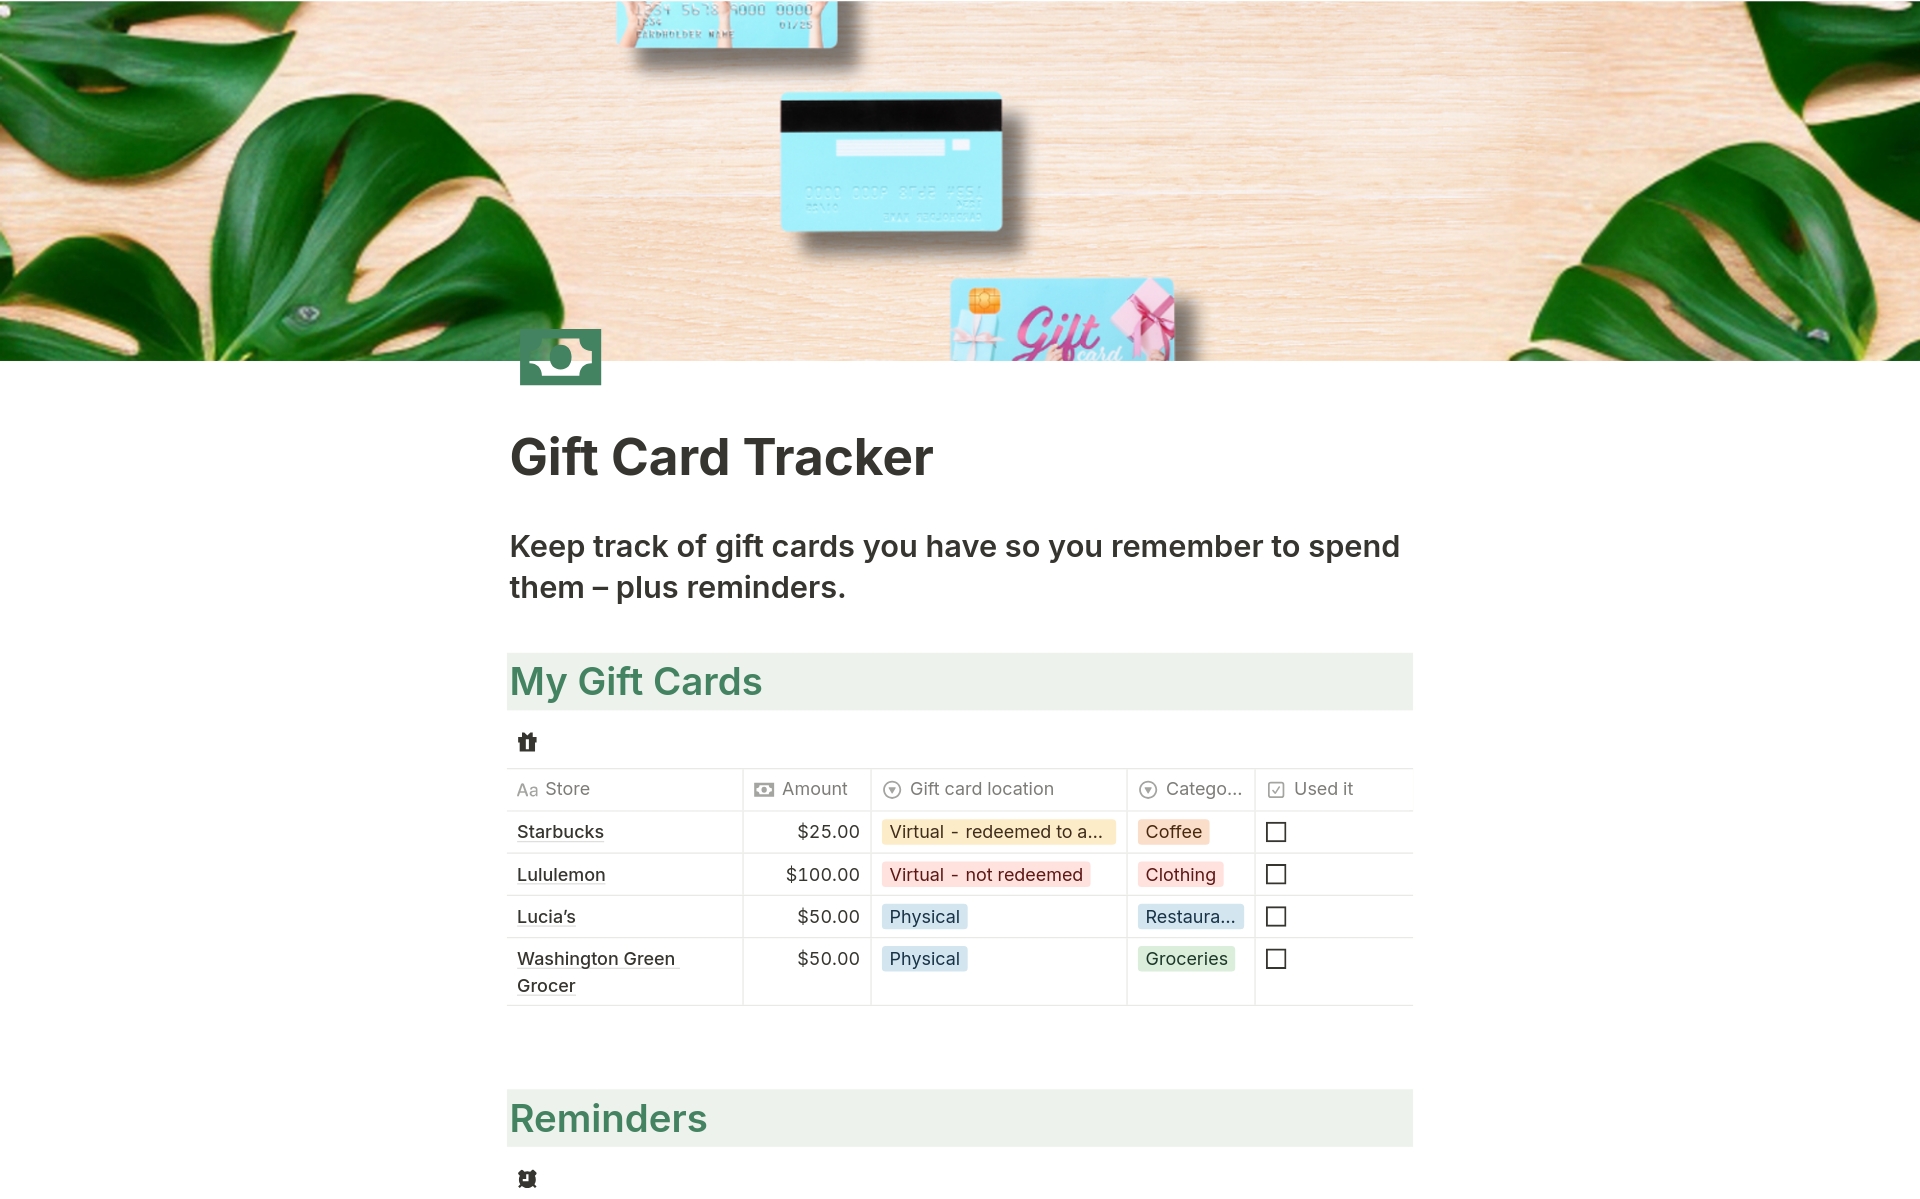 Uma prévia do modelo para Gift Card Tracker